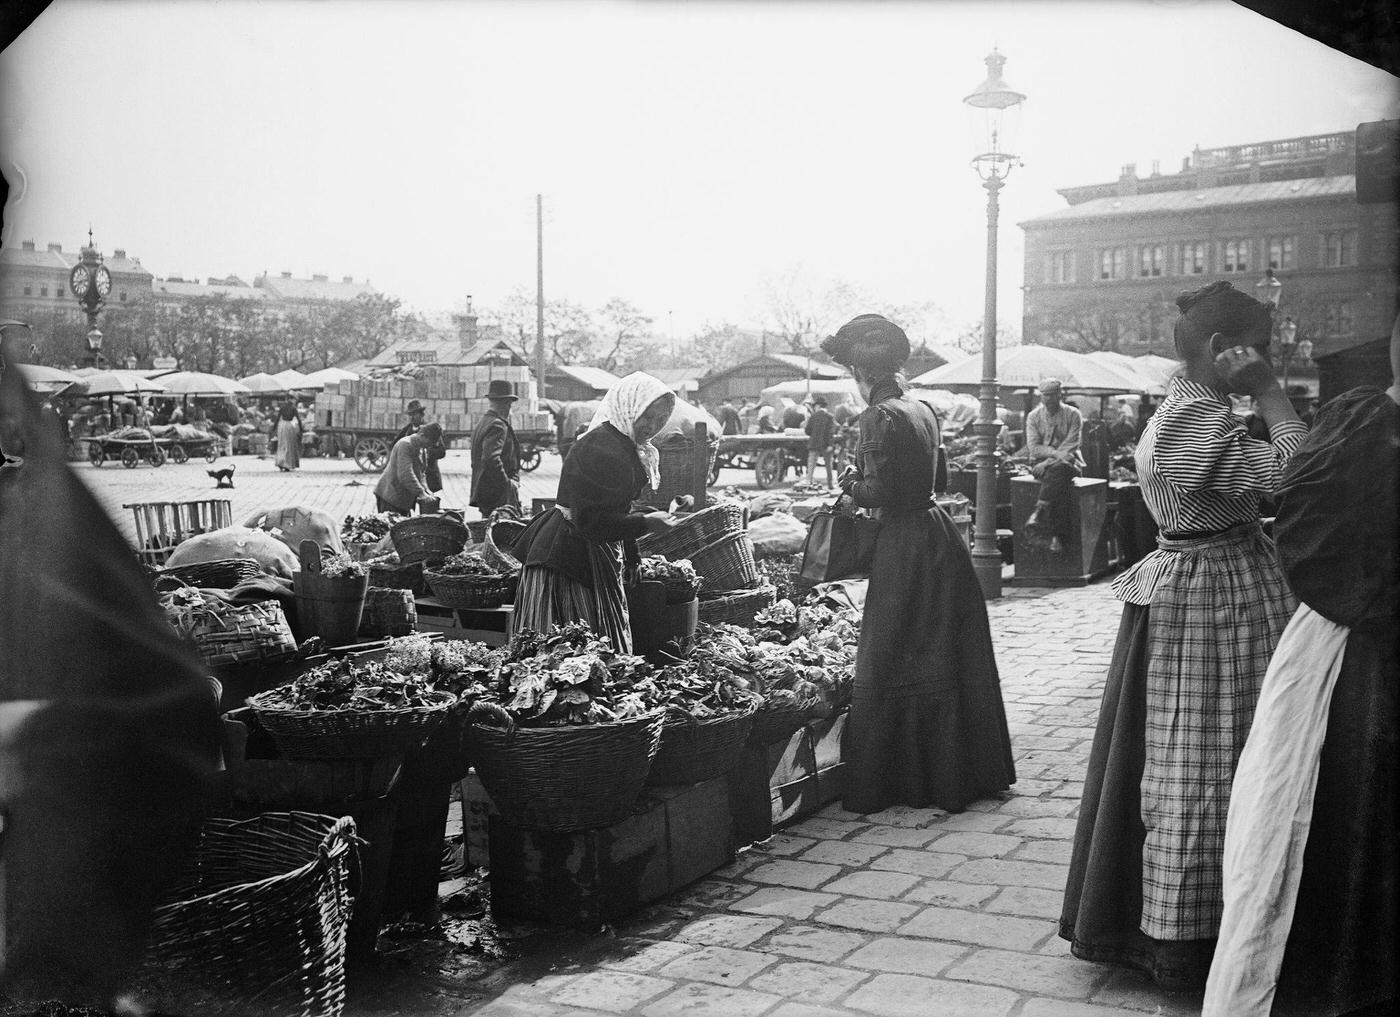 At the Naschmarkt, Vienna, Around 1900